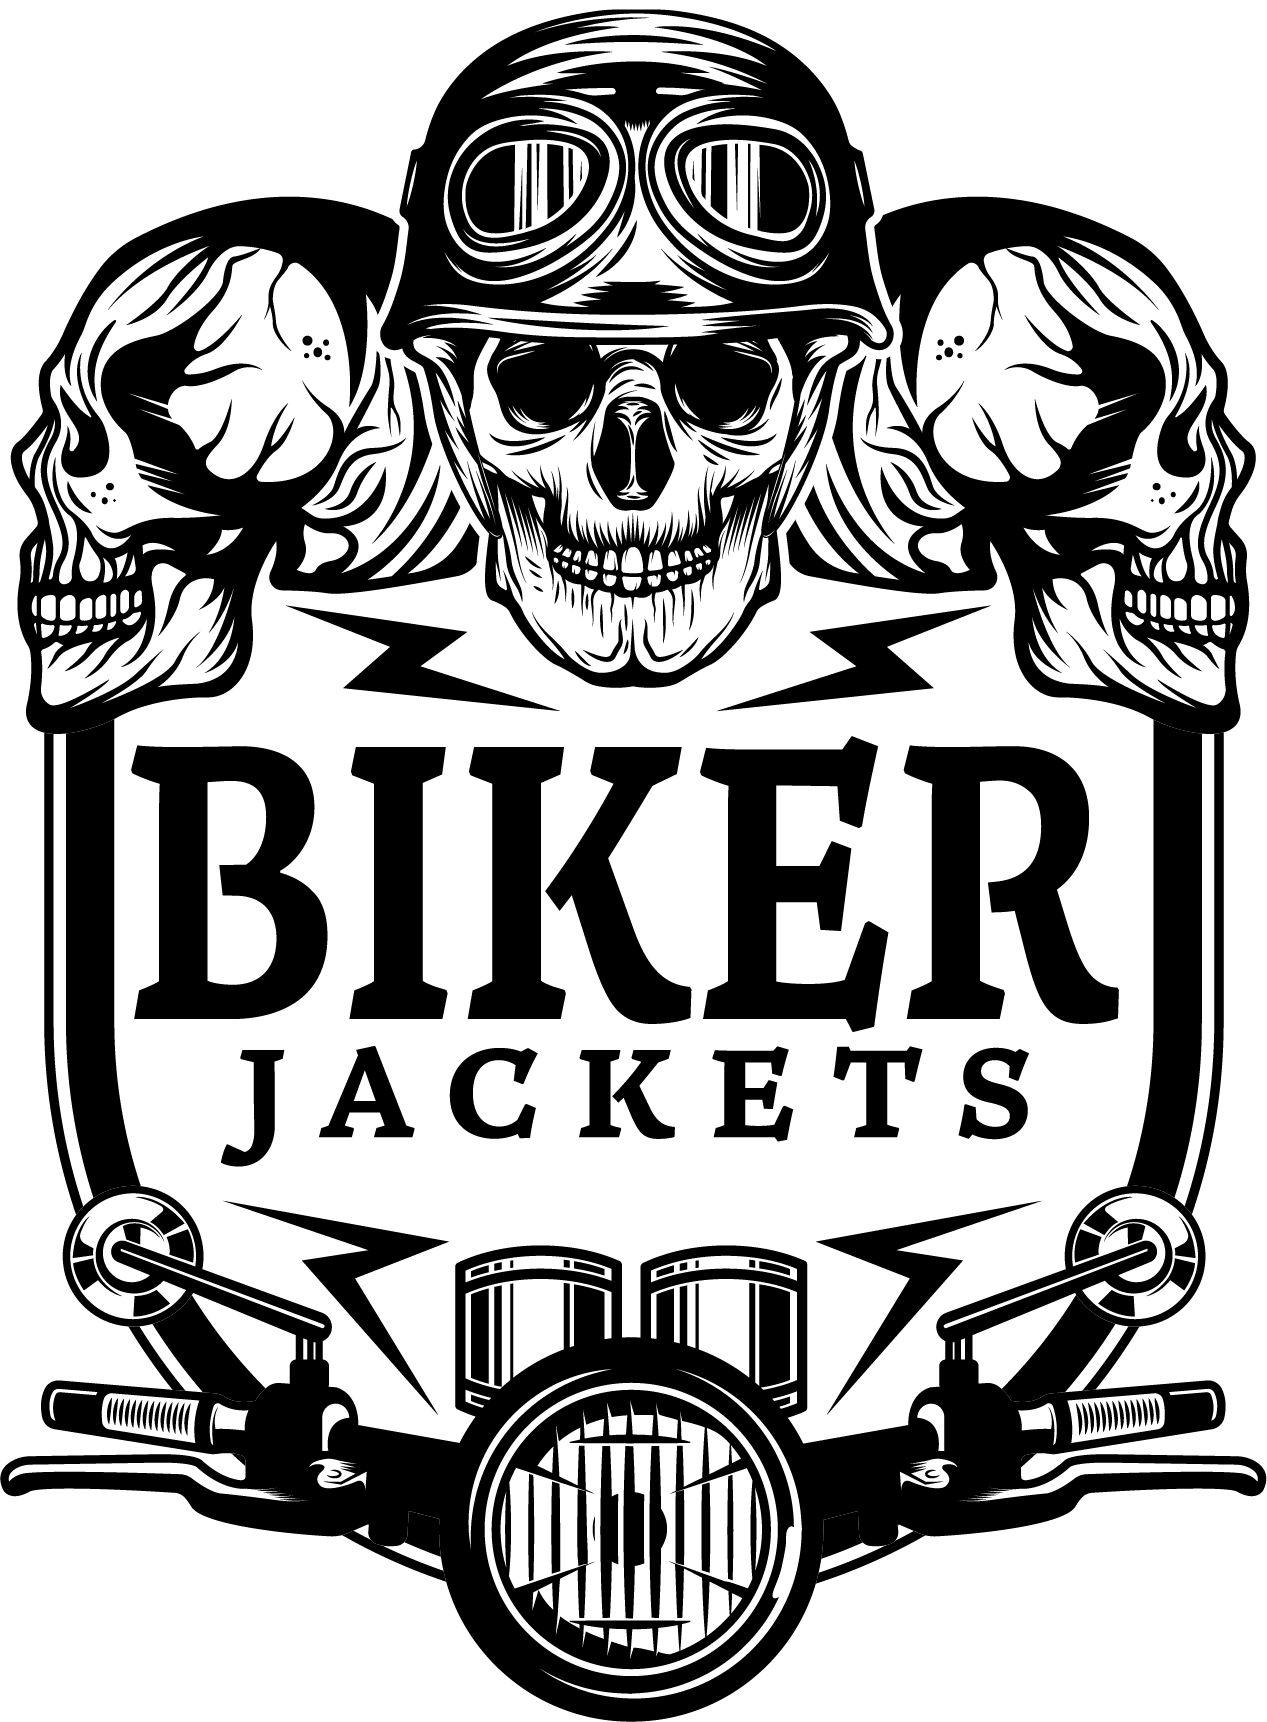 BikerJackets.us